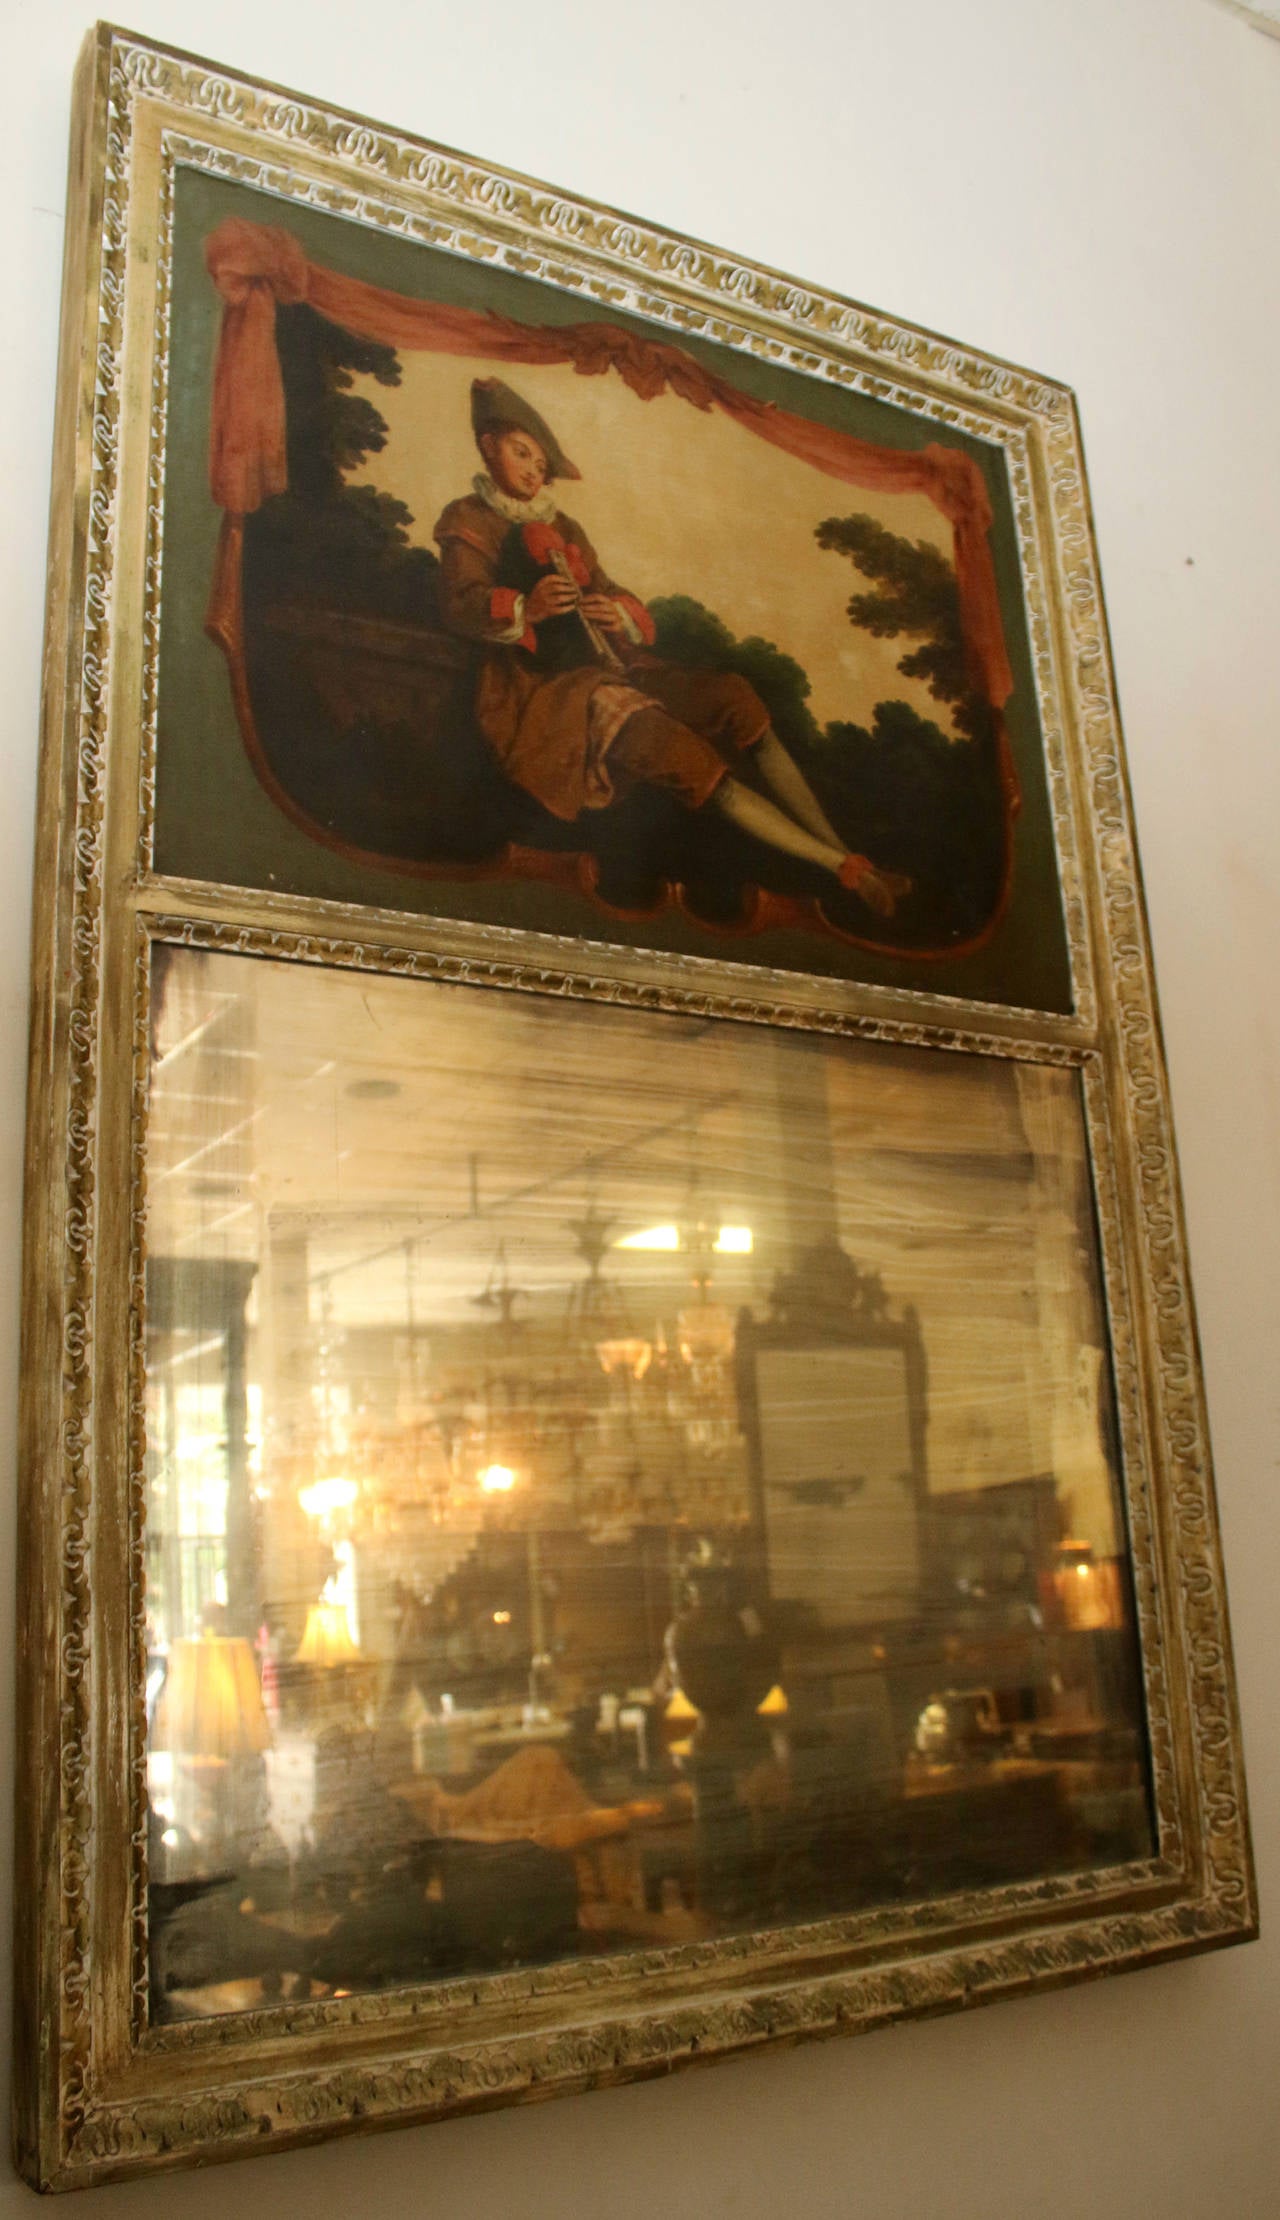 Miroir Trumeau français de taille impressionnante, de style Louis XVI, datant du début des années 1800. La peinture à l'huile sur toile représente un musicien en tenue de cour, un jeune homme jouant de la double flûte dans un cadre pastoral. La